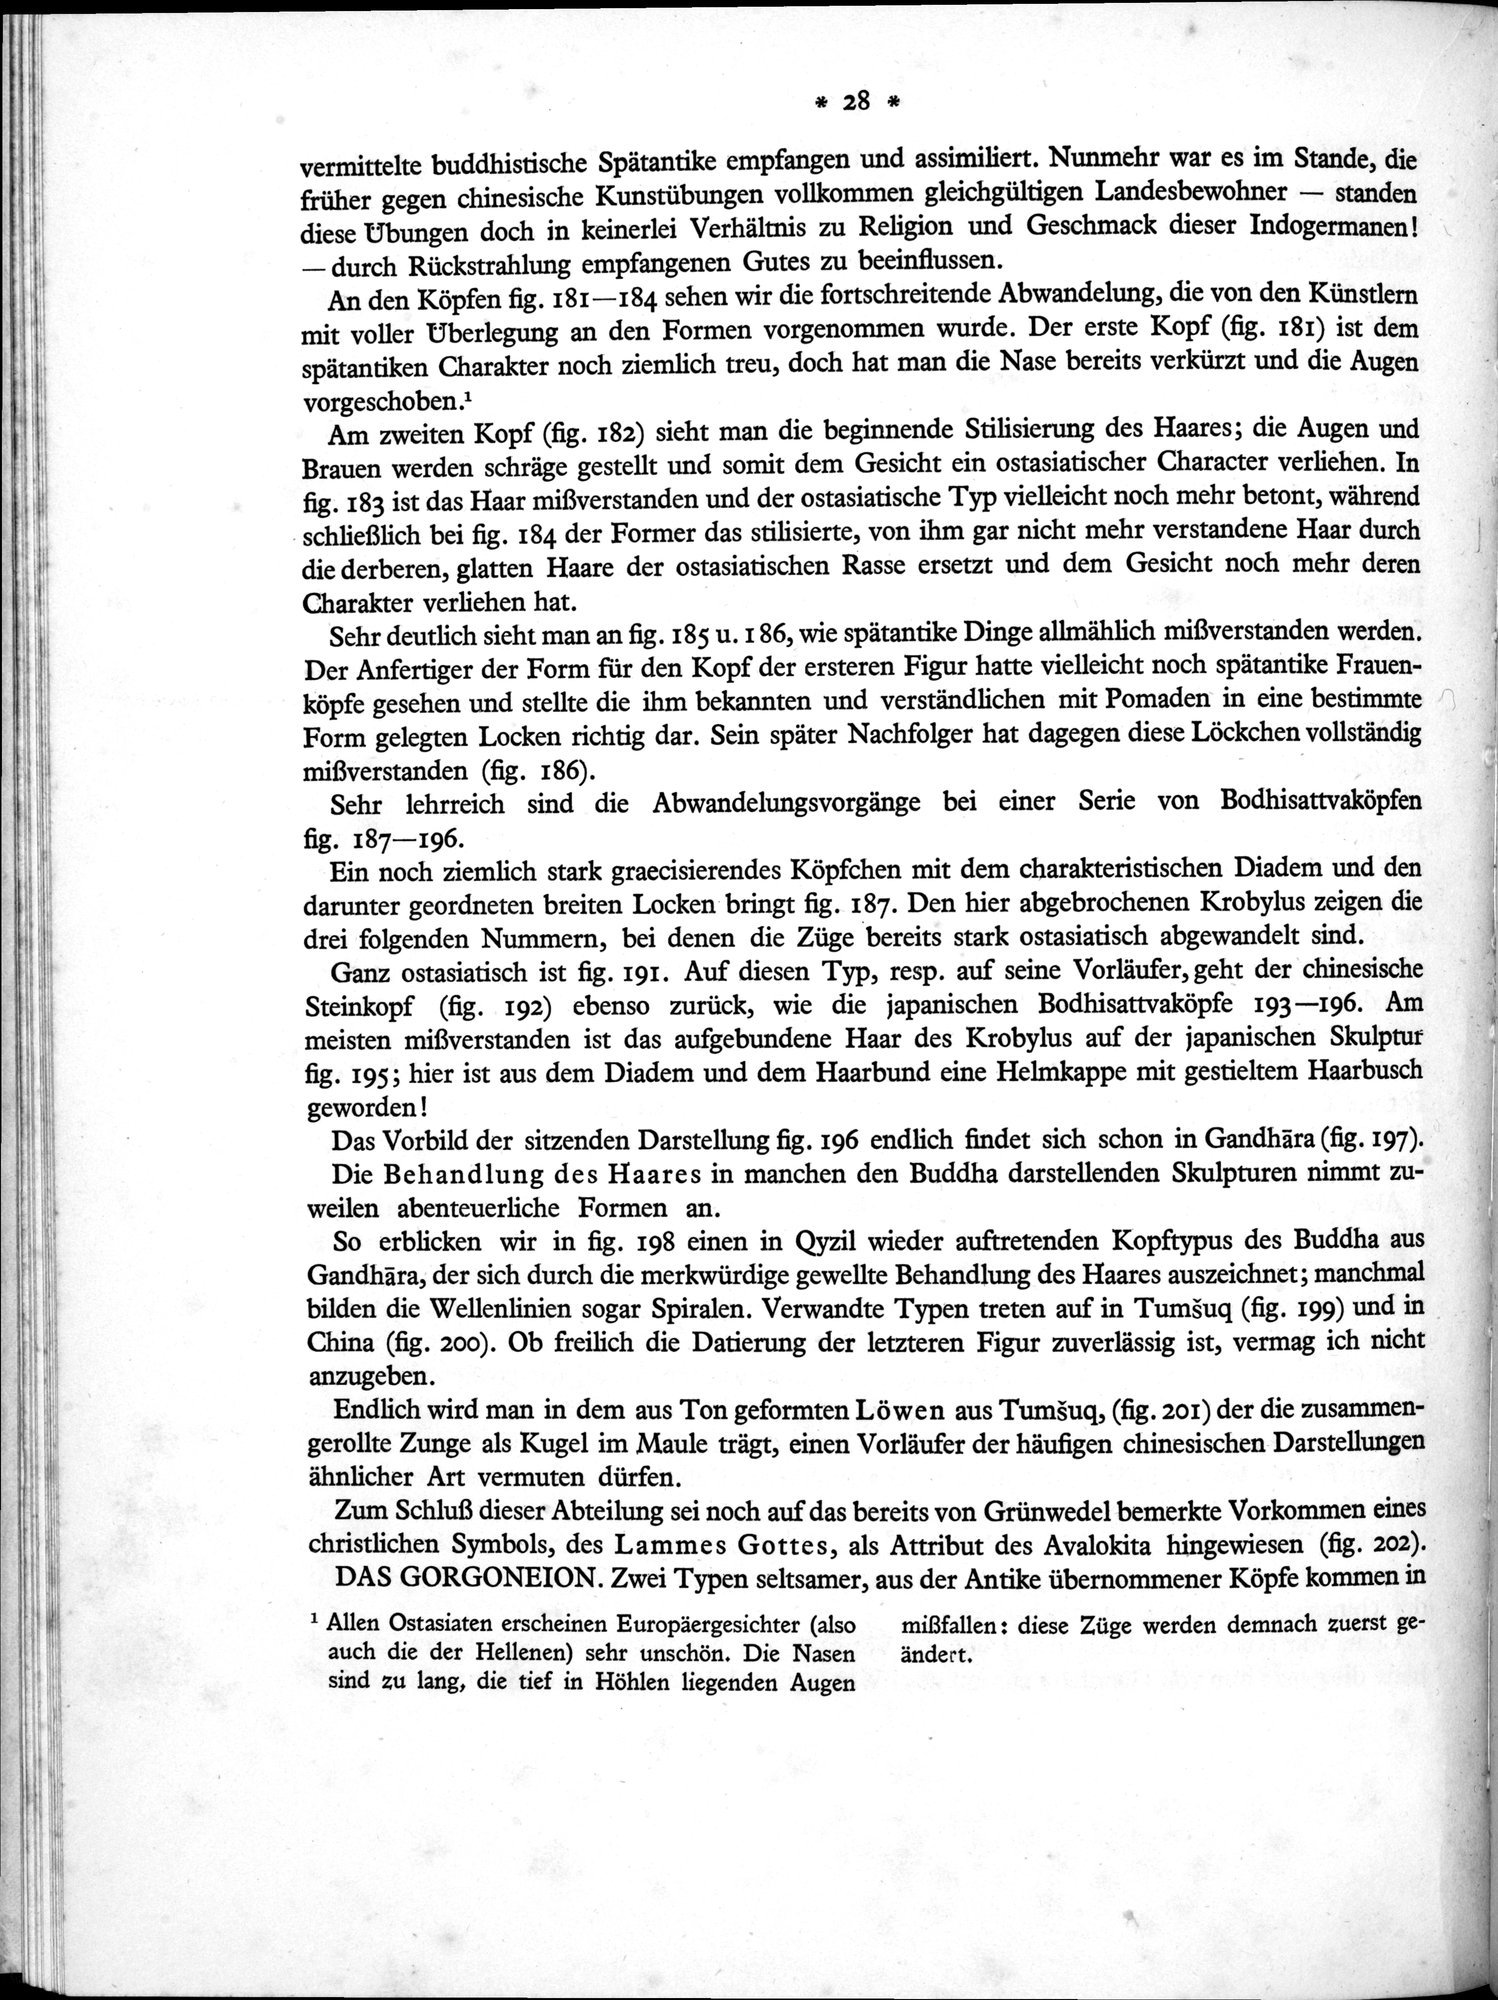 Bilderatlas zur Kunst und Kulturgeschichte Mittel-Asiens : vol.1 / Page 32 (Grayscale High Resolution Image)